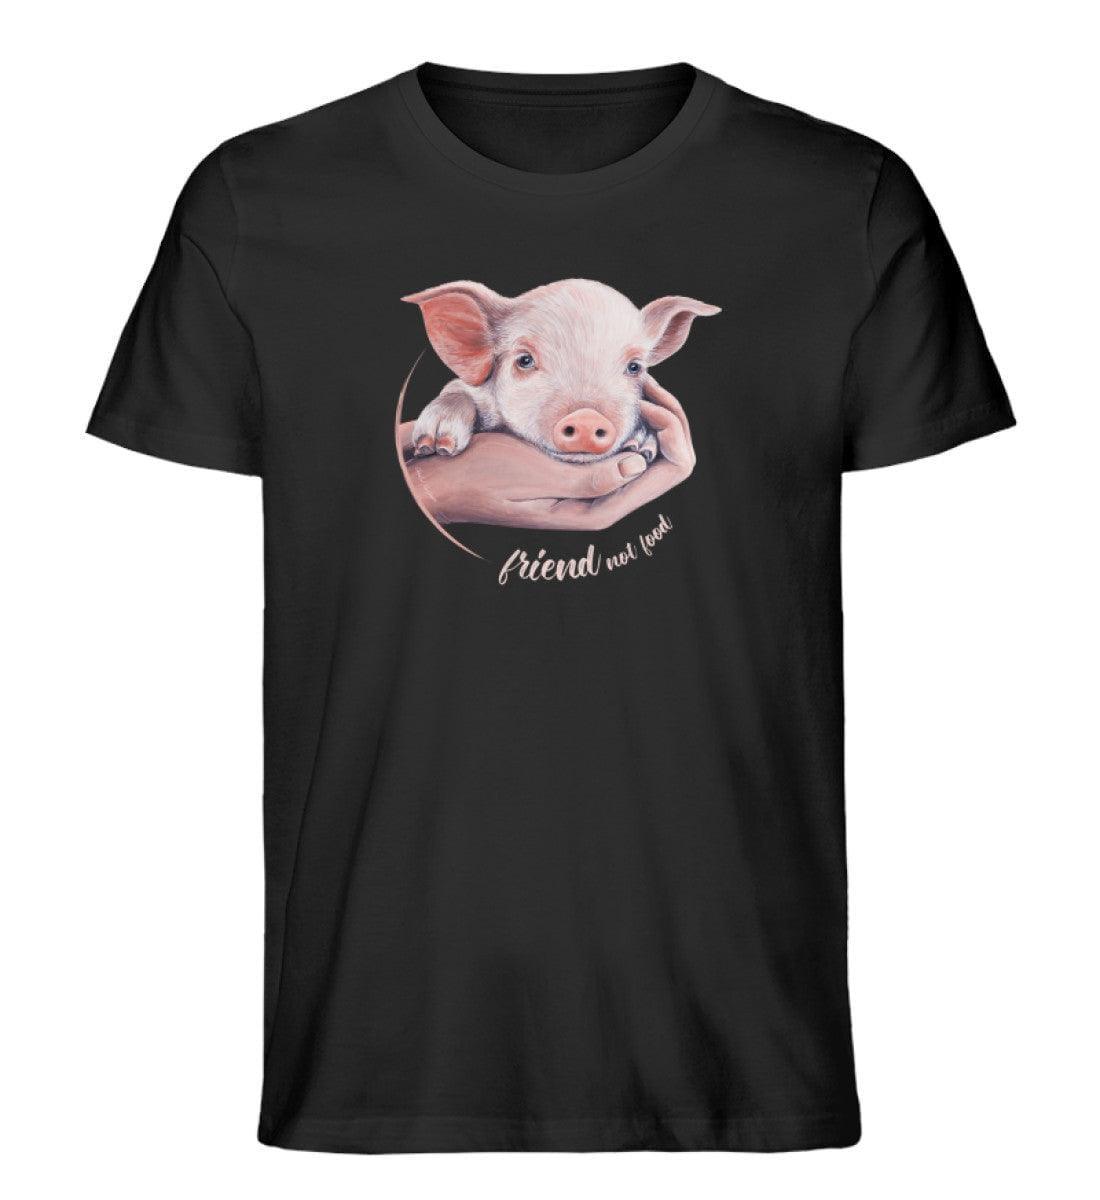 Friend not food Schwein [Chantal Kaufmann] - Unisex Organic Shirt Rocker T-Shirt ST/ST Shirtee Schwarz S 